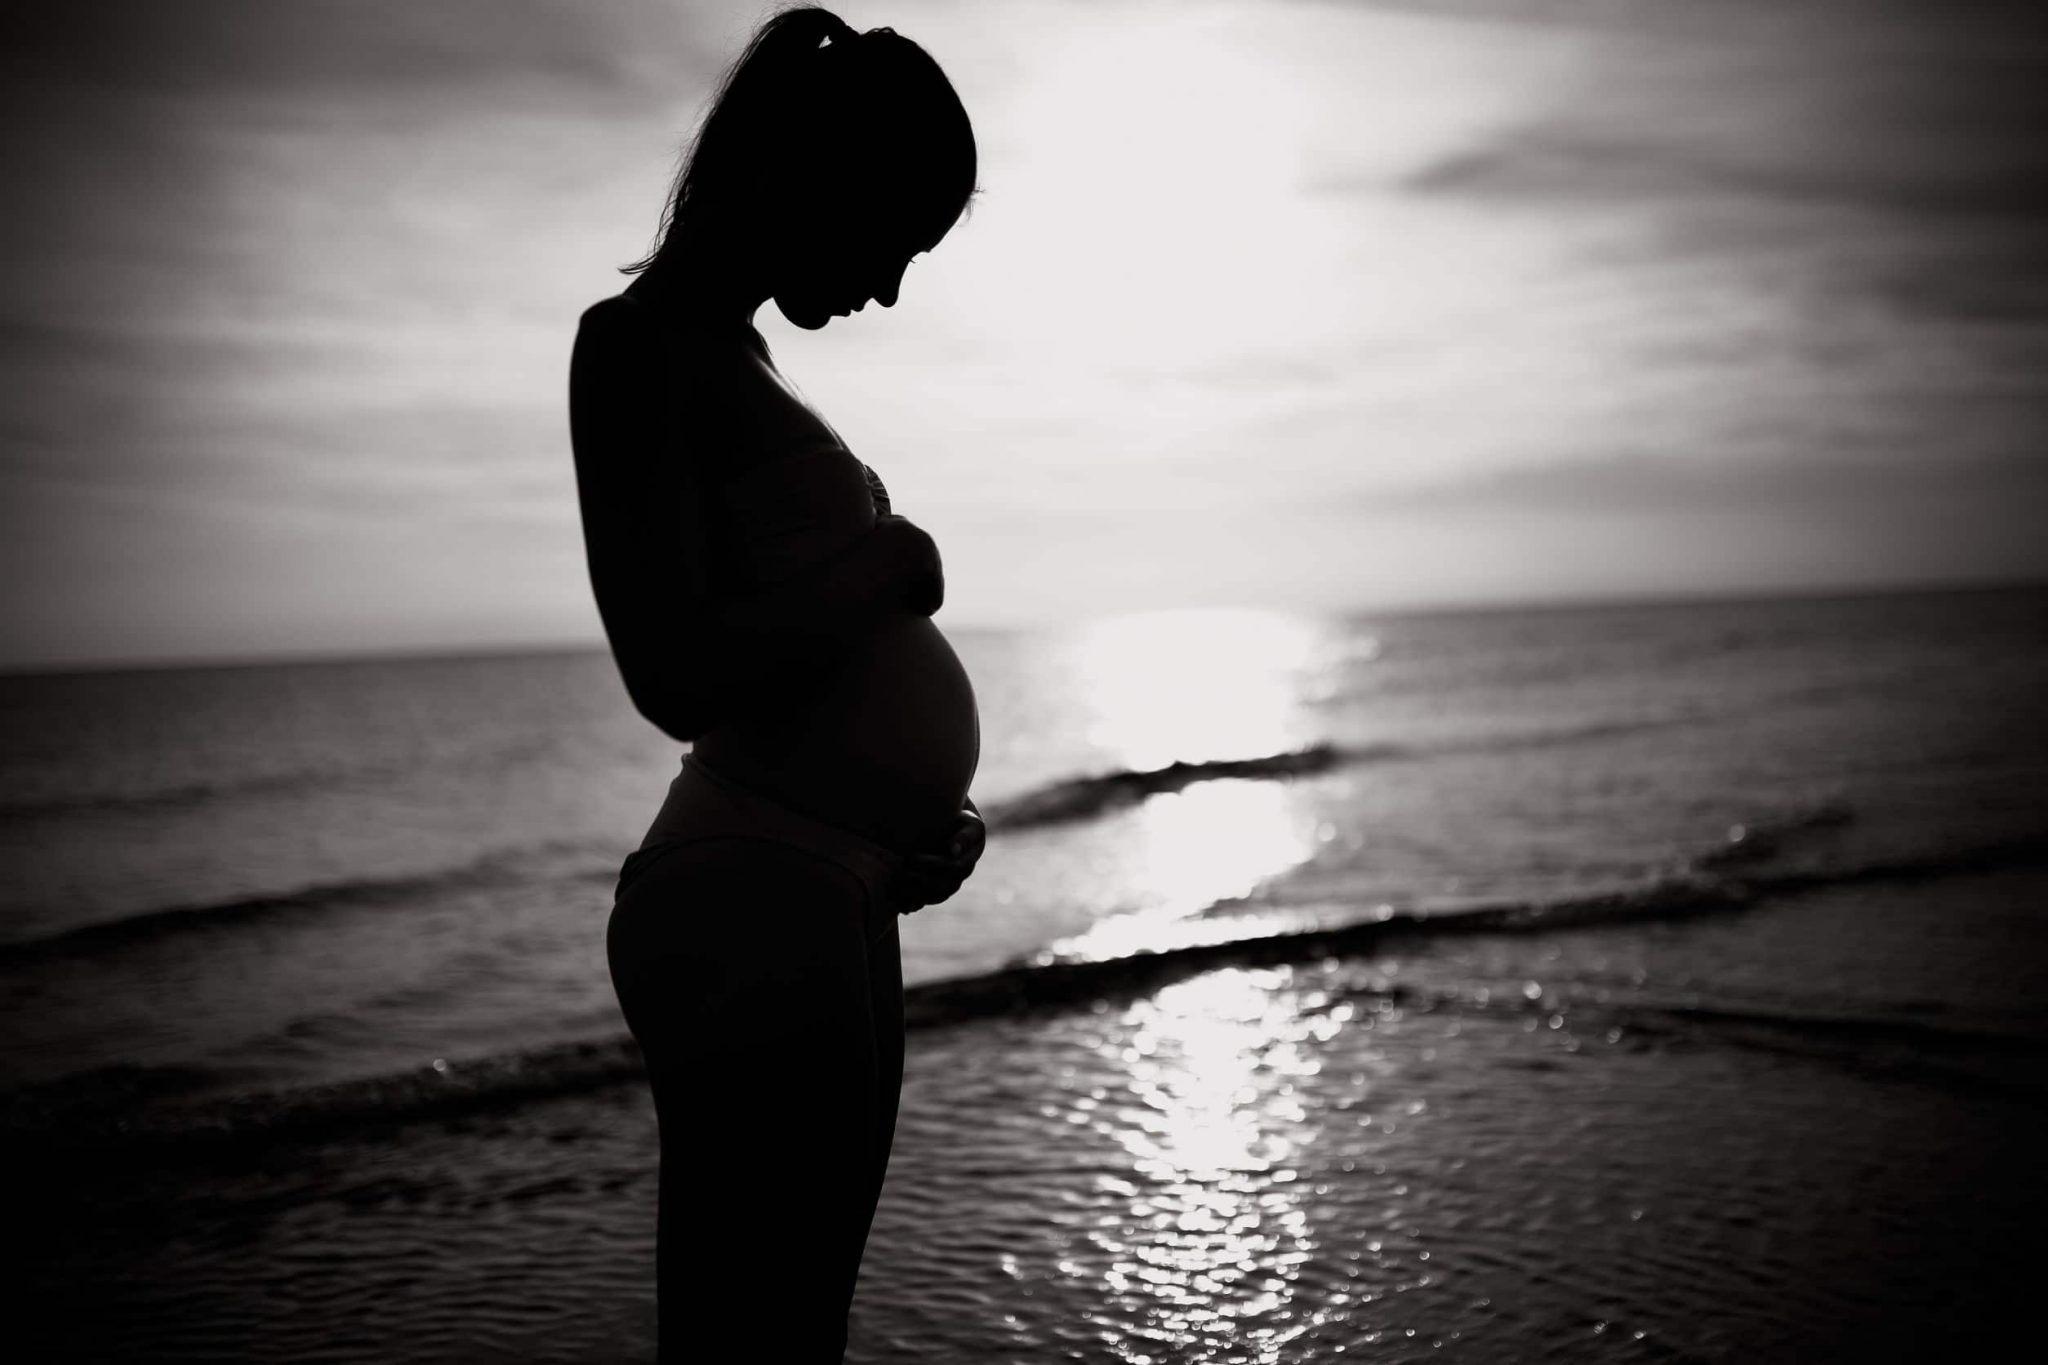 Premier trimestre de grossesse : la plénitude